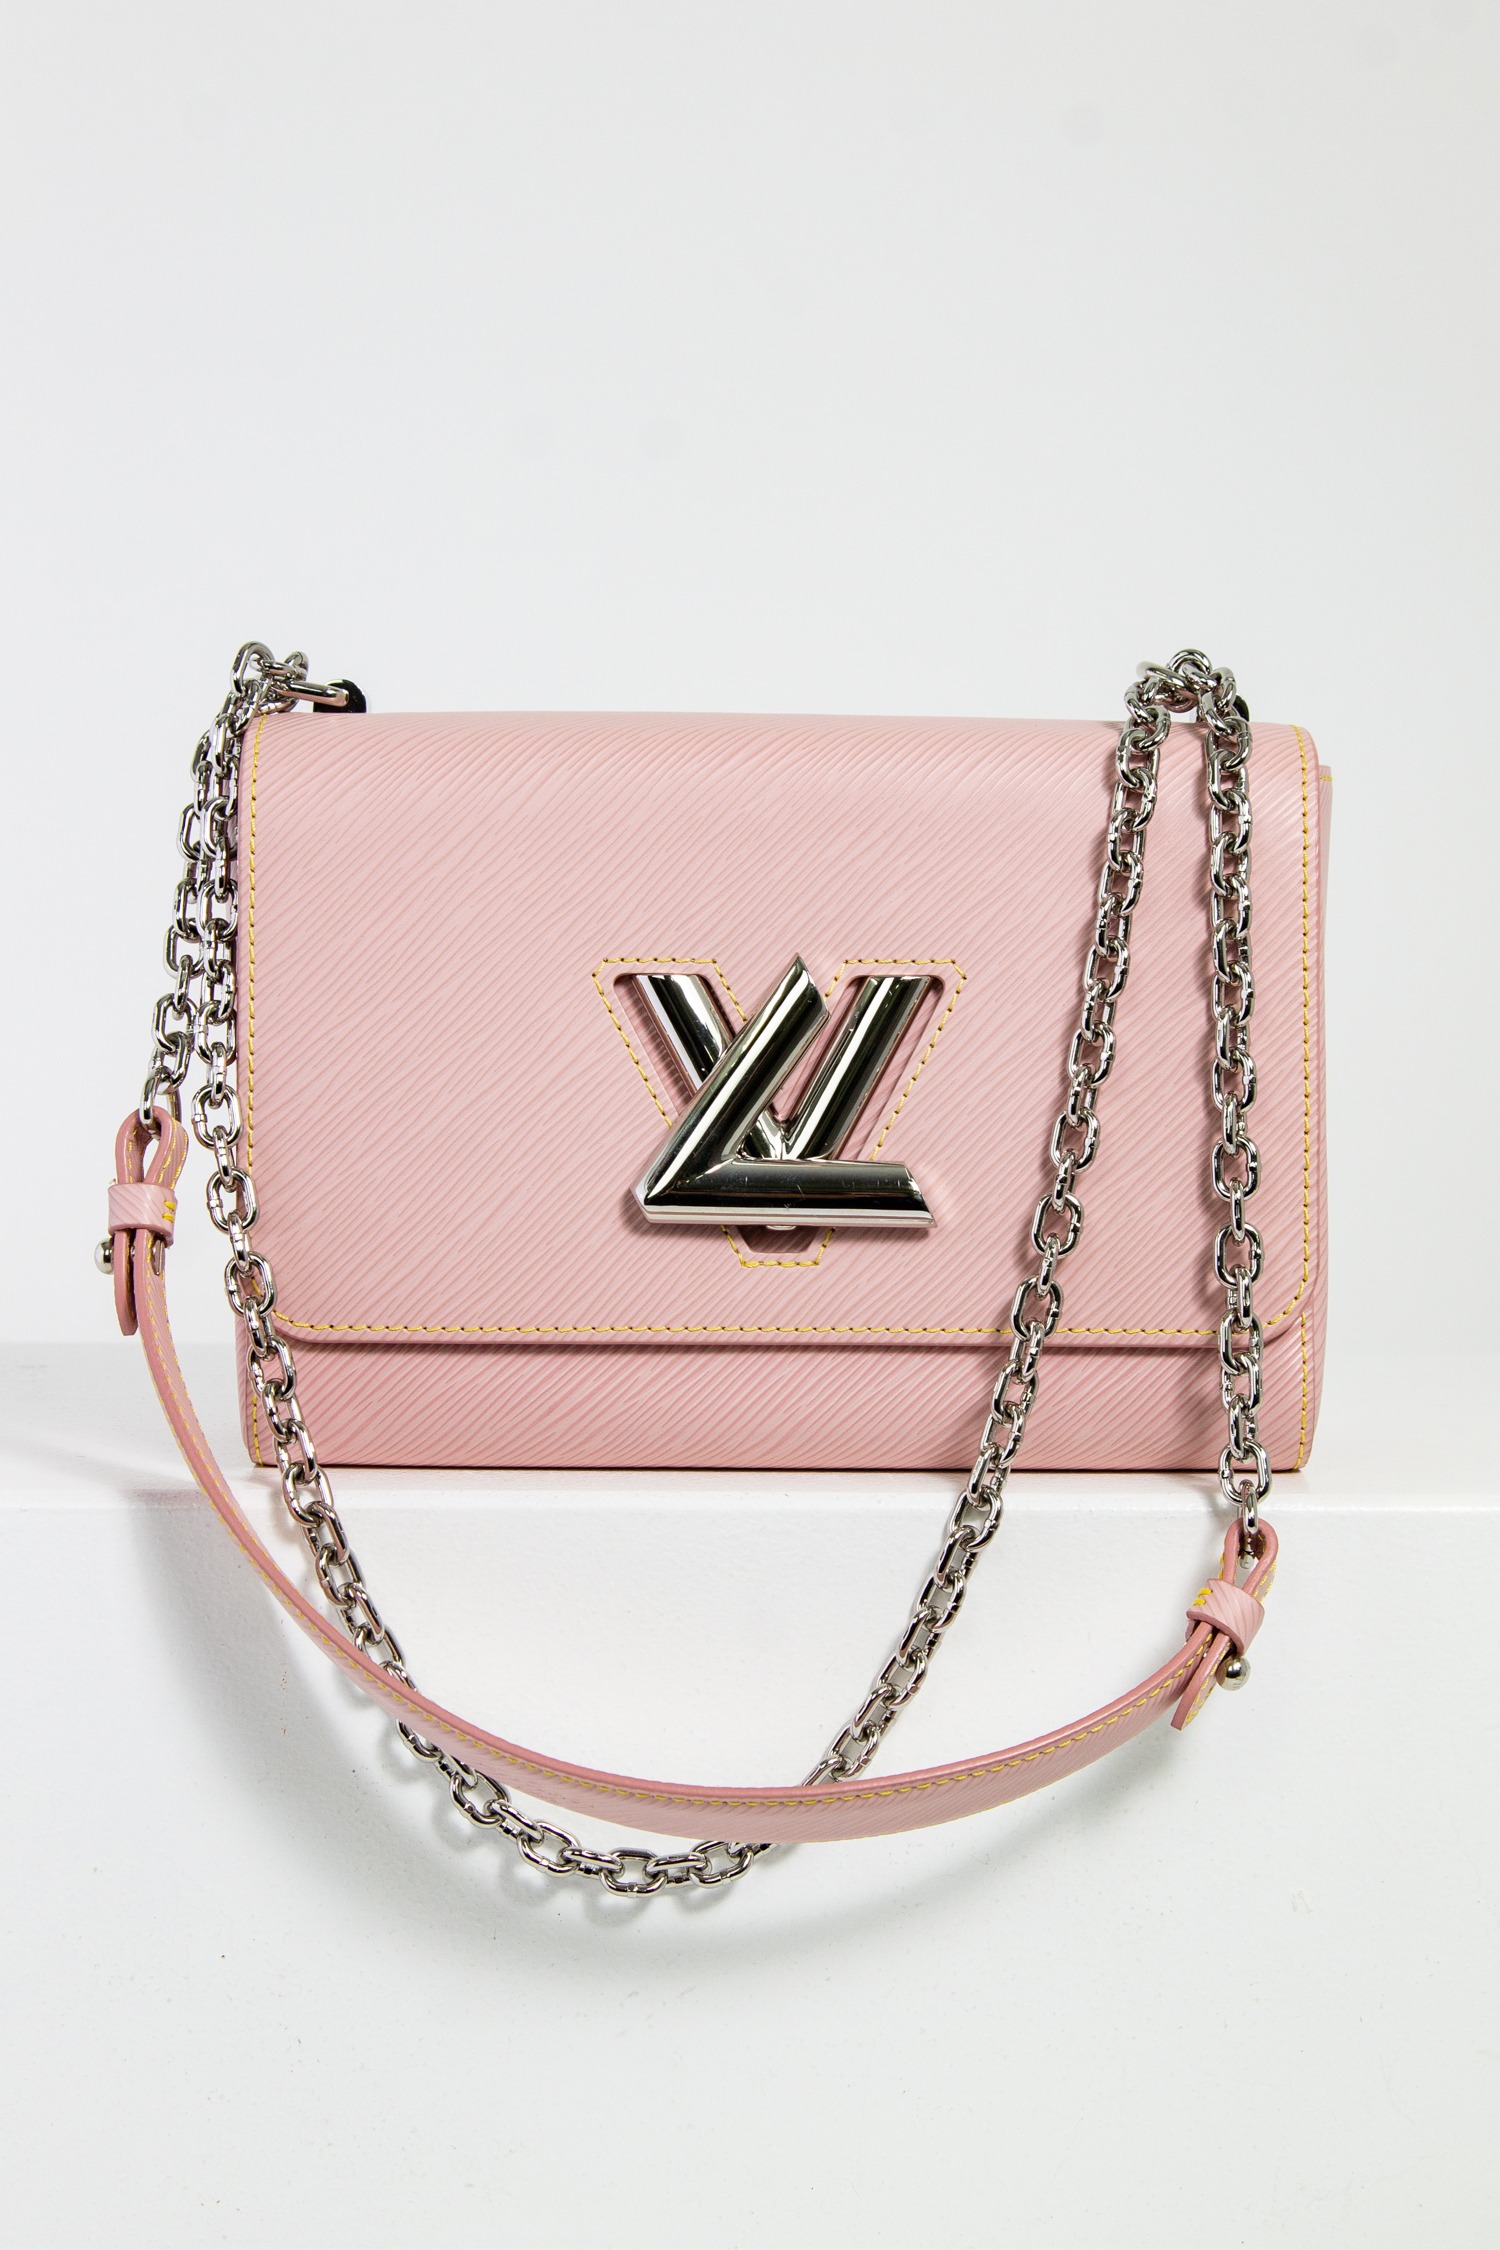 Louis Vuitton Schultertasche Twist in rosa